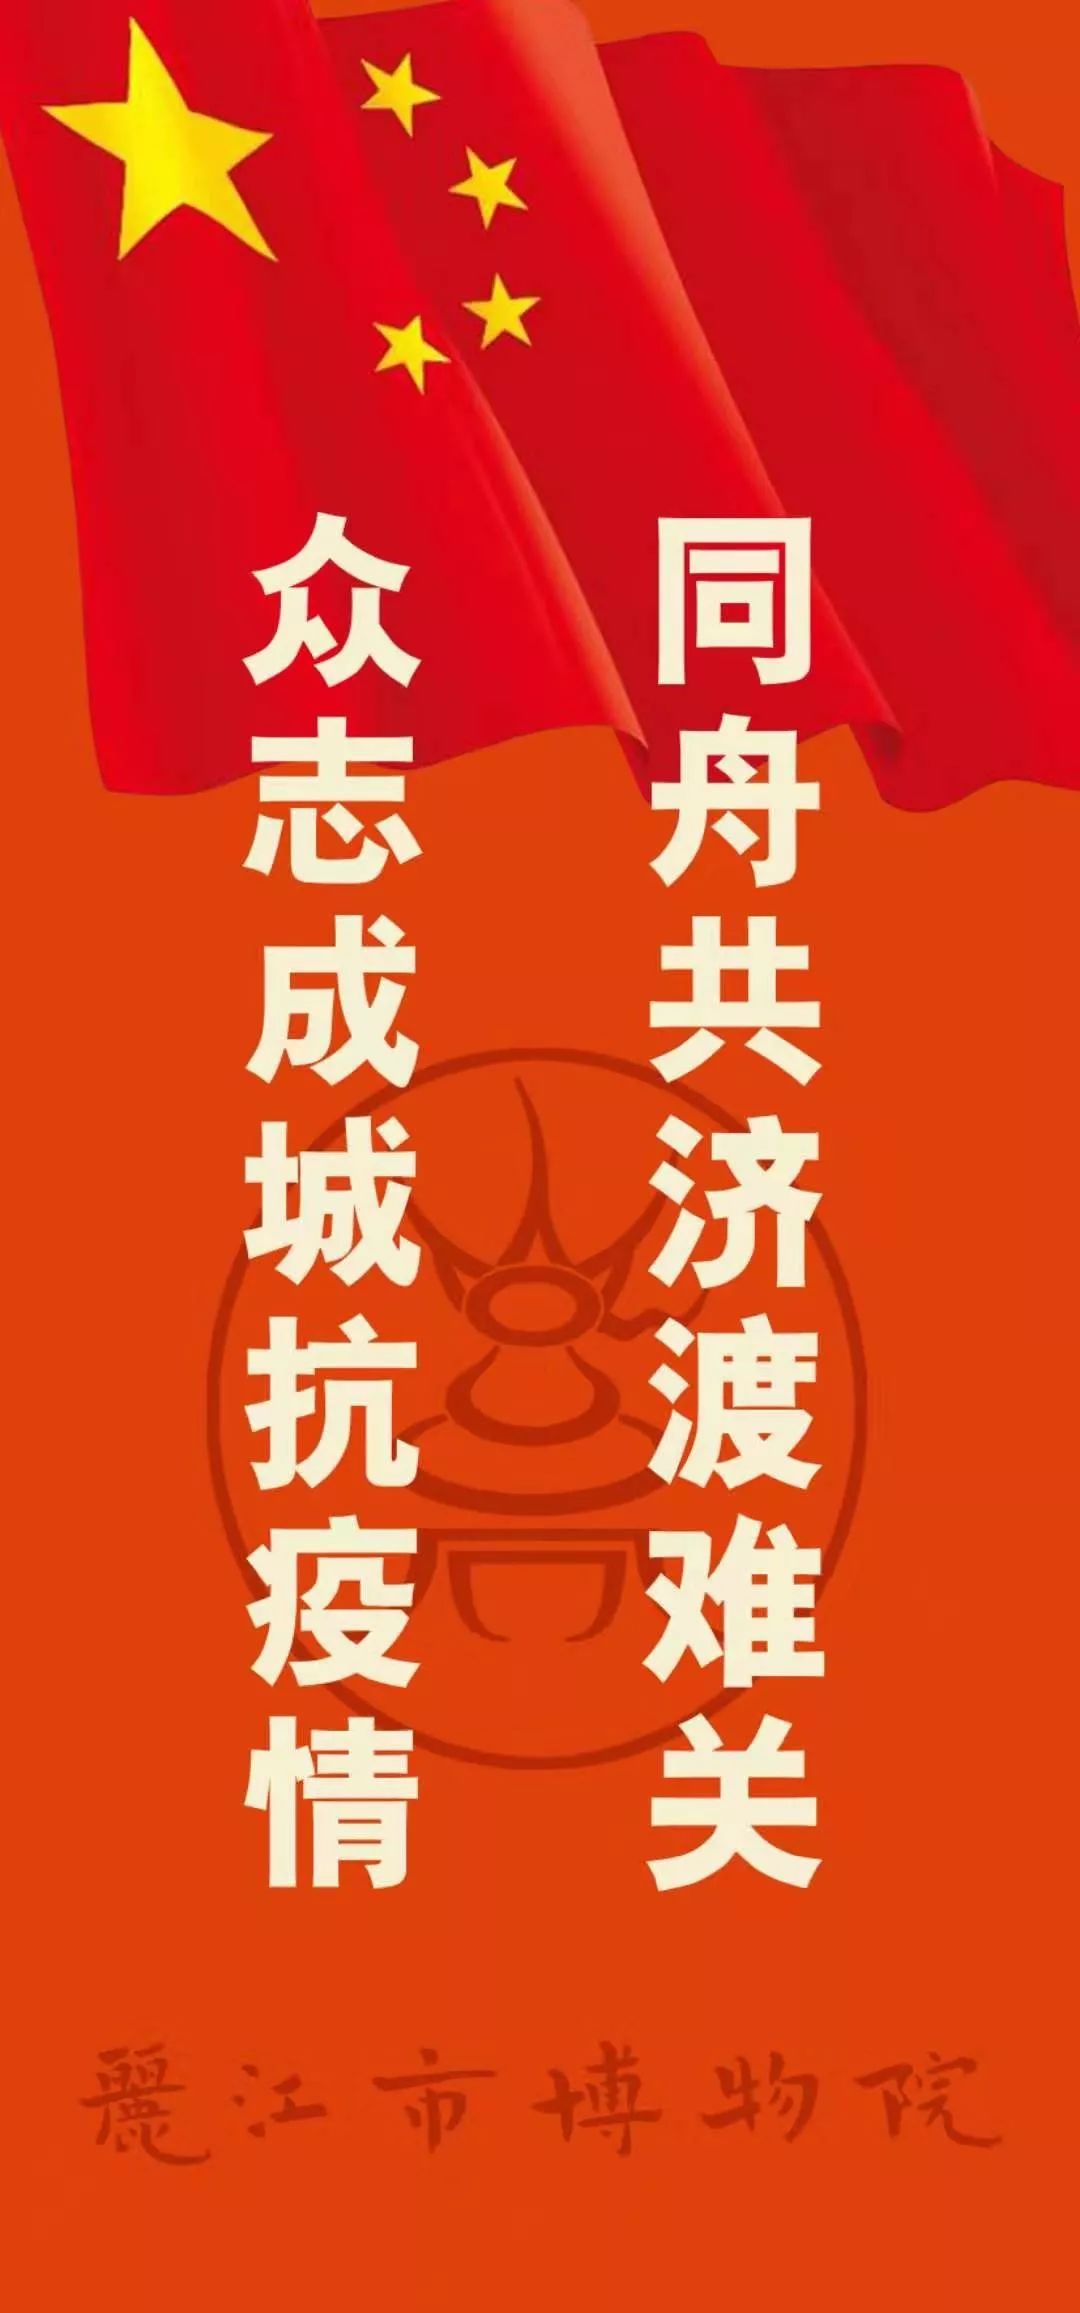 今宵银辉照征人——庚子元宵,丽江市博物院祝愿祖国平安